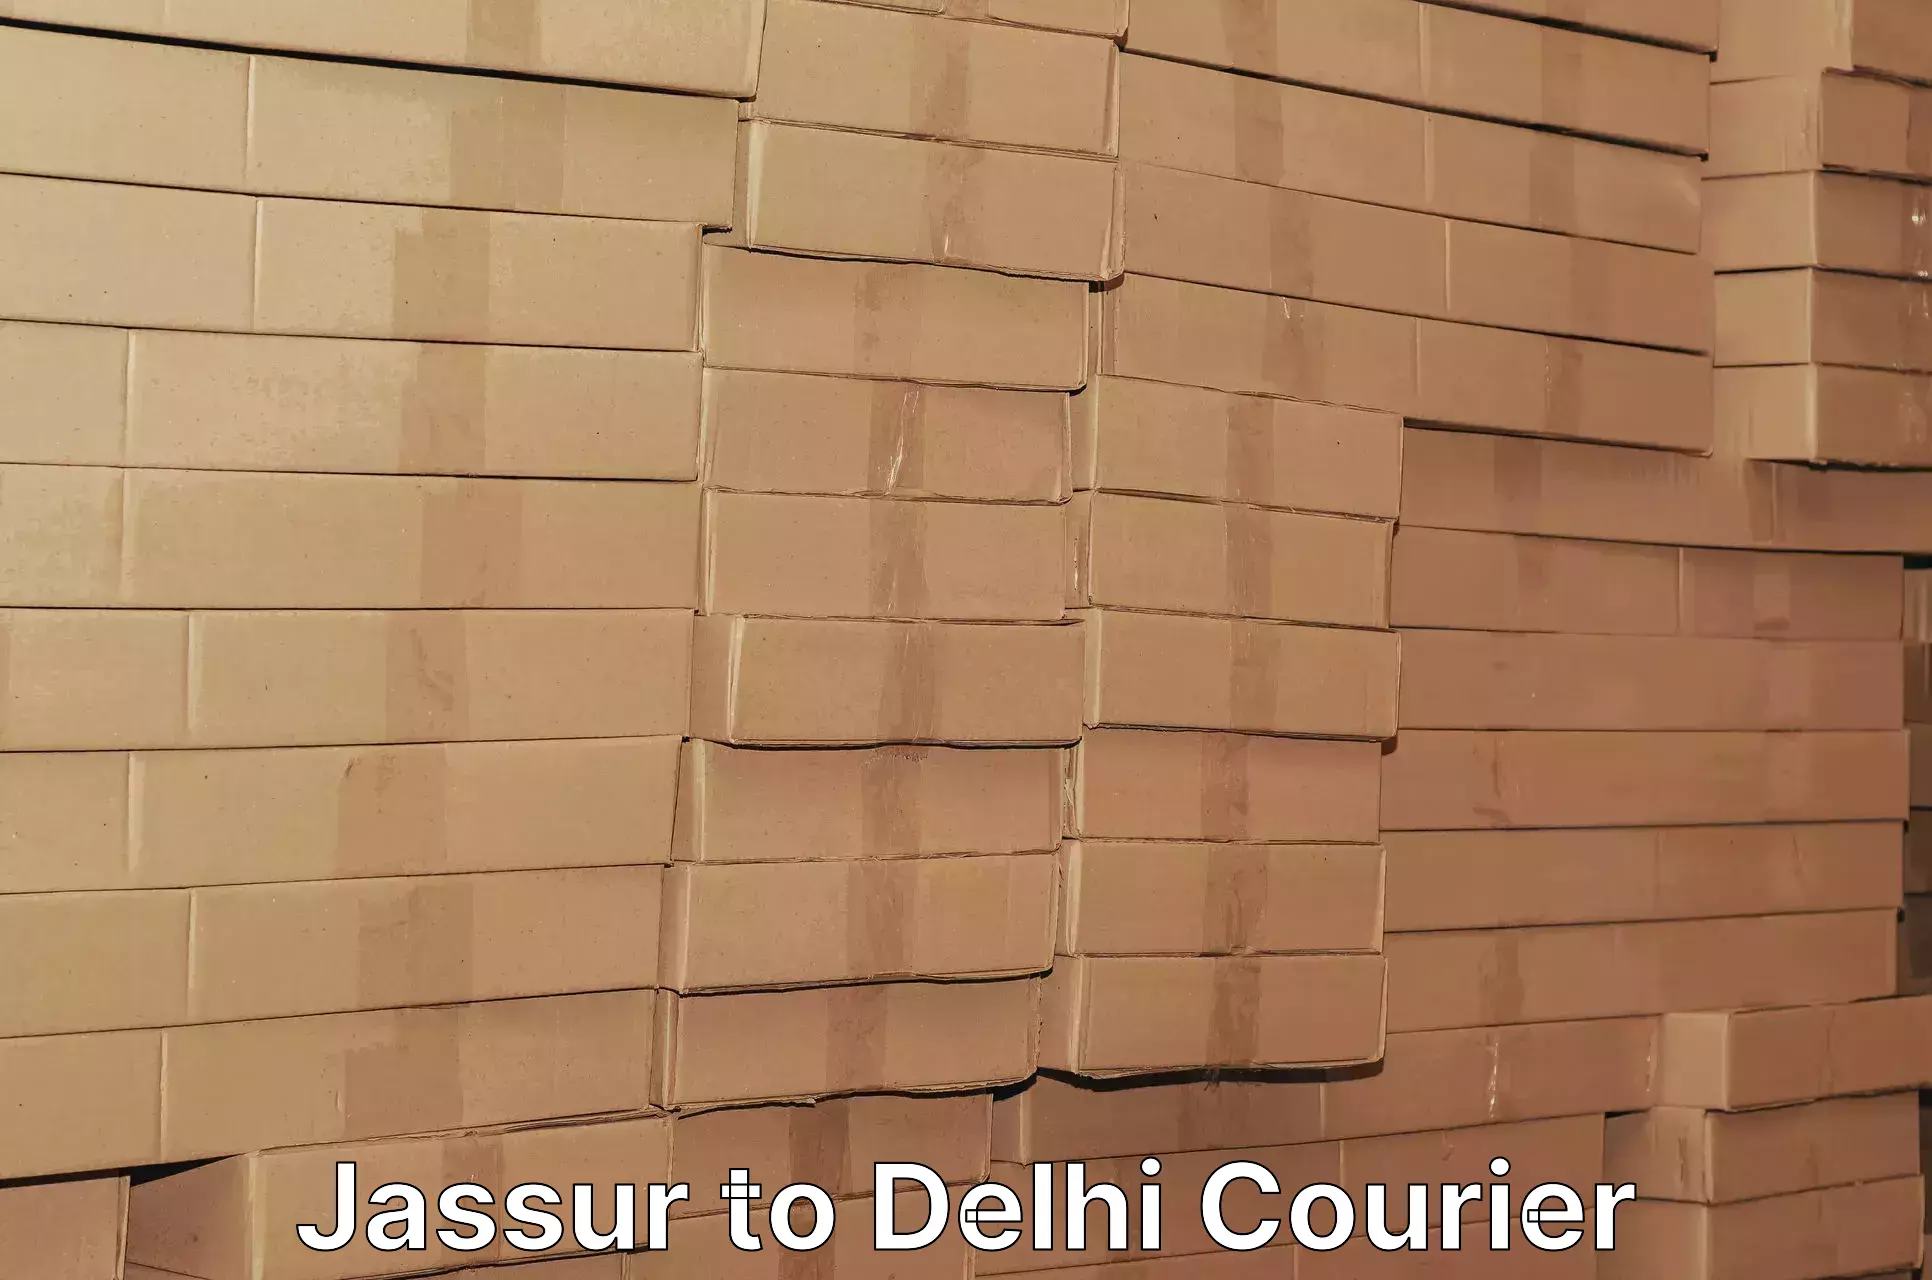 Logistics service provider Jassur to NIT Delhi